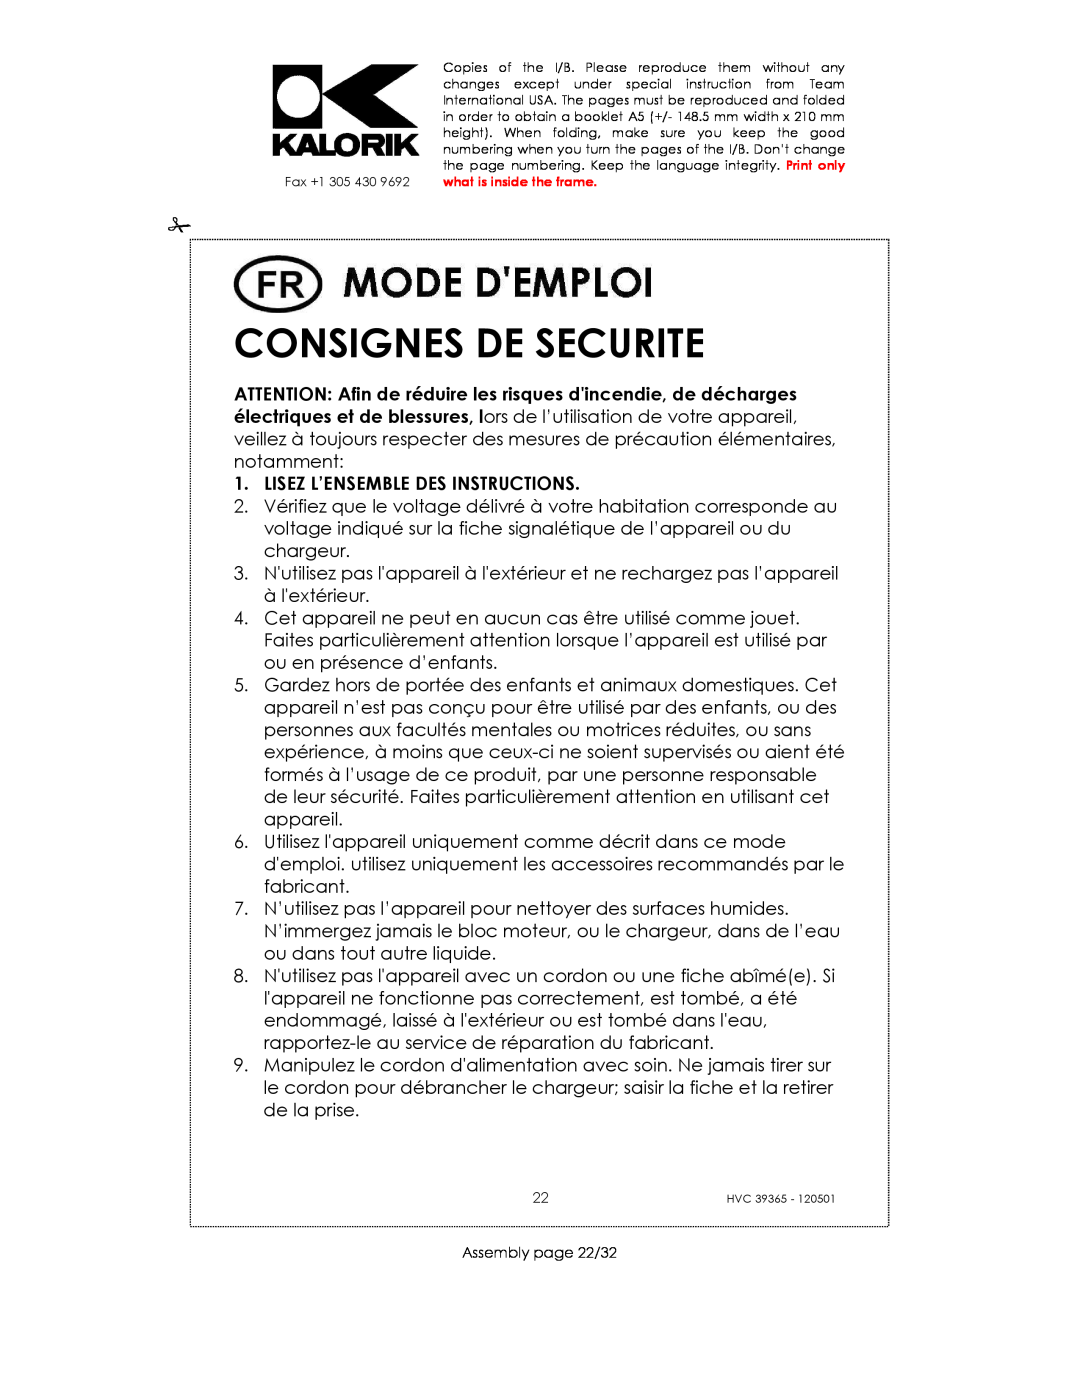 Kalorik HVC 39365 manual Consignes De Securite, Lisez L’Ensemble Des Instructions 